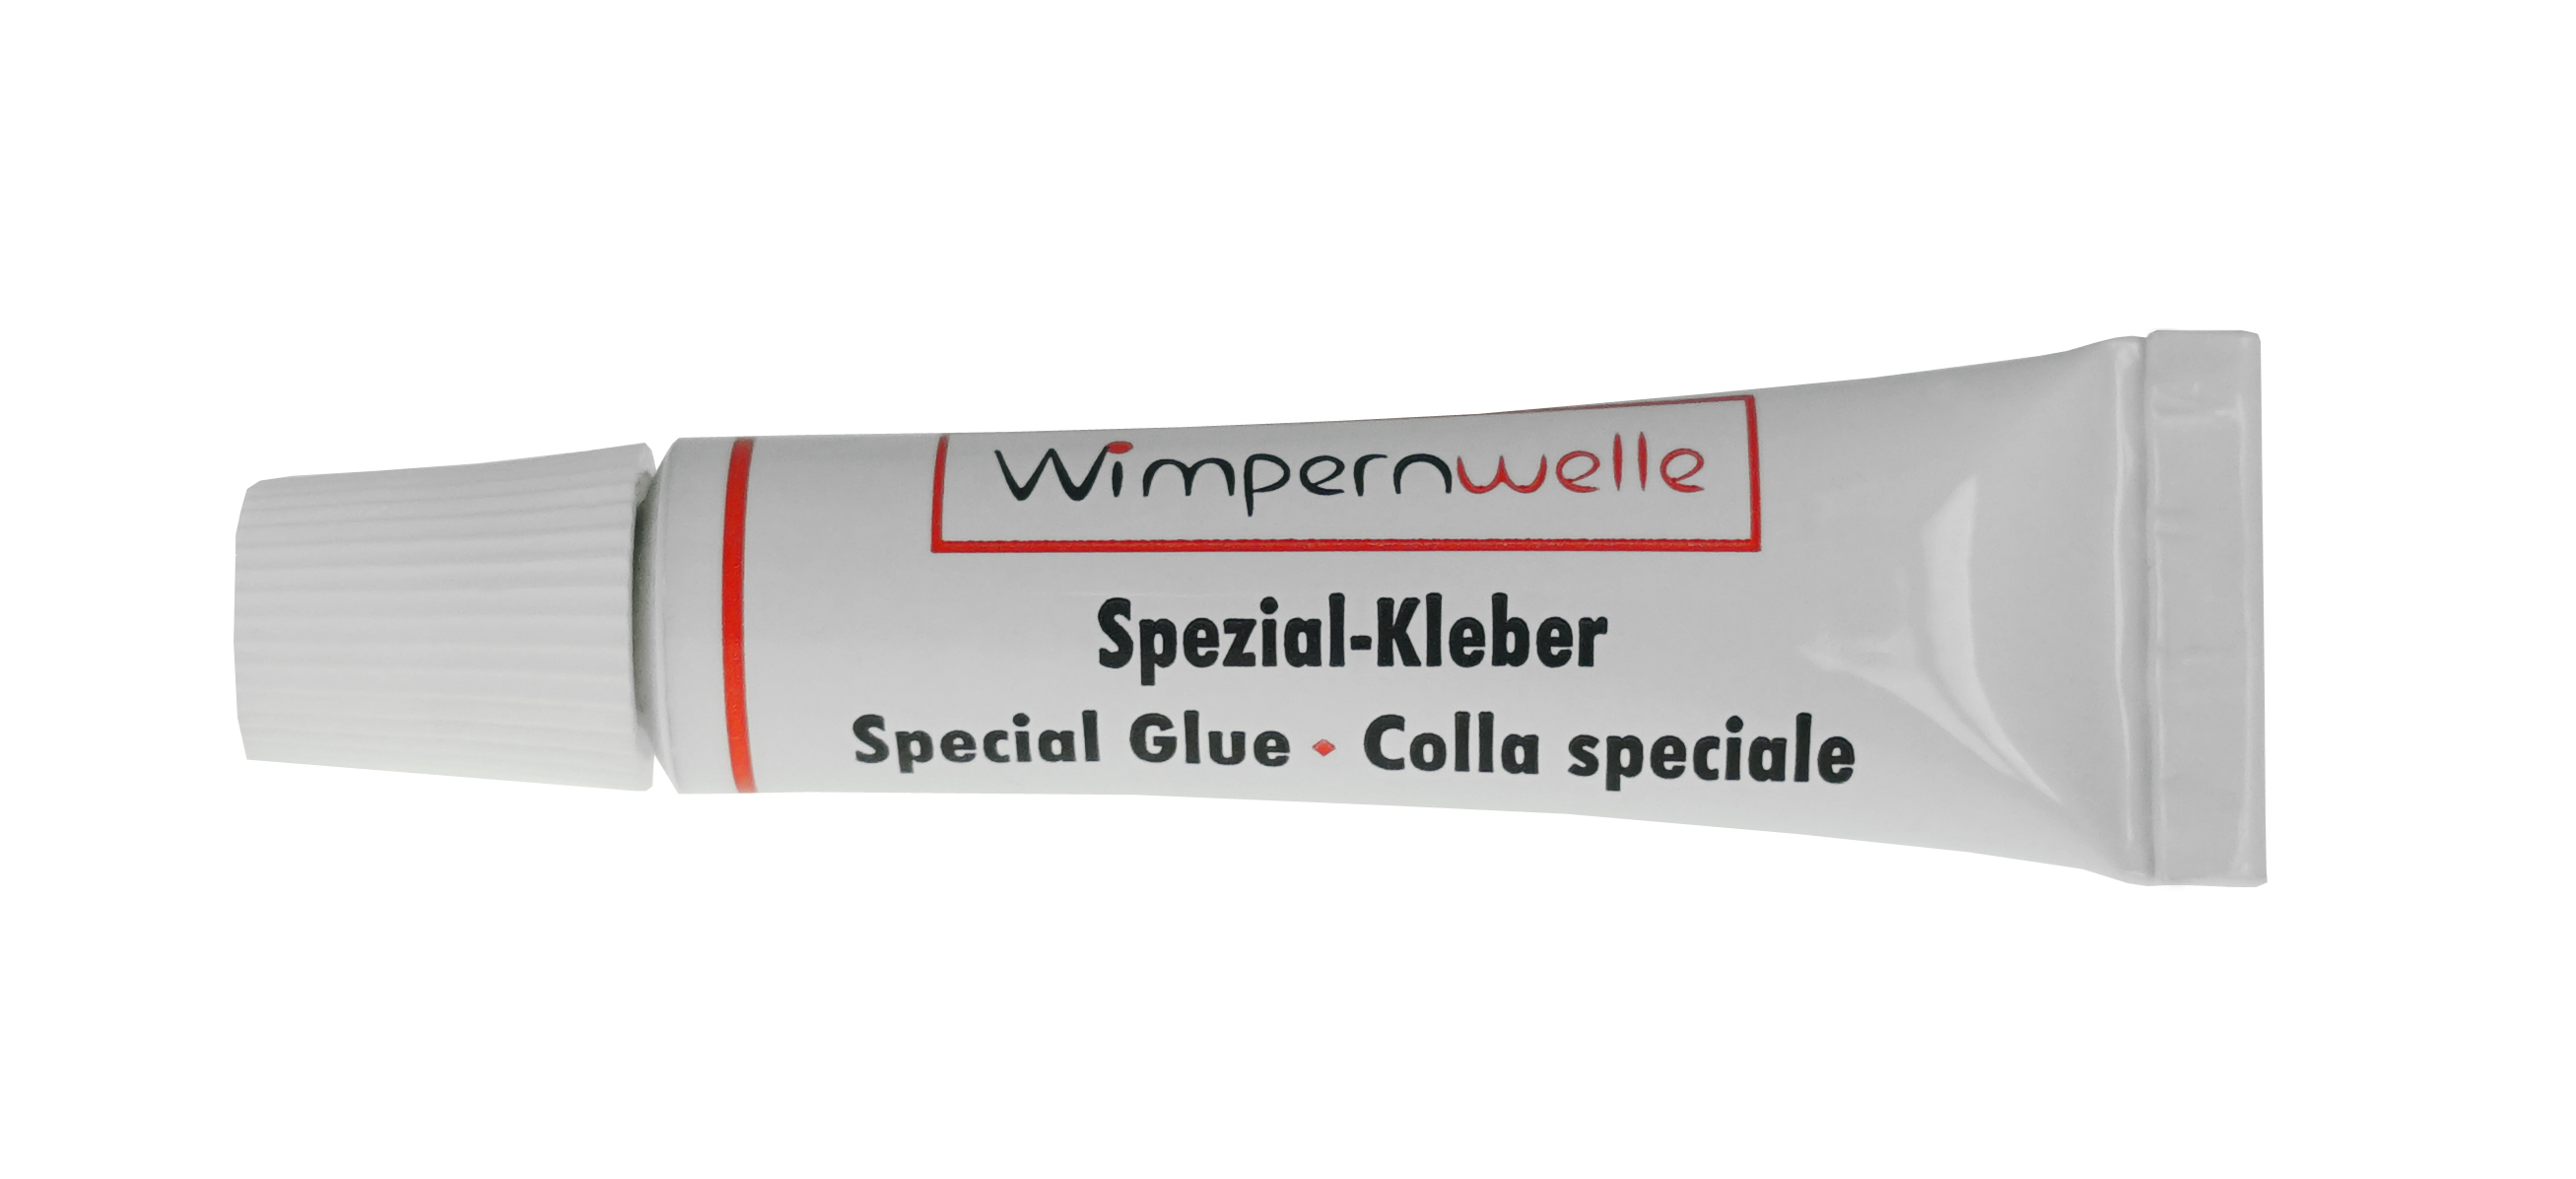 Wimpernwelle Spezial-Kleber 2 ml